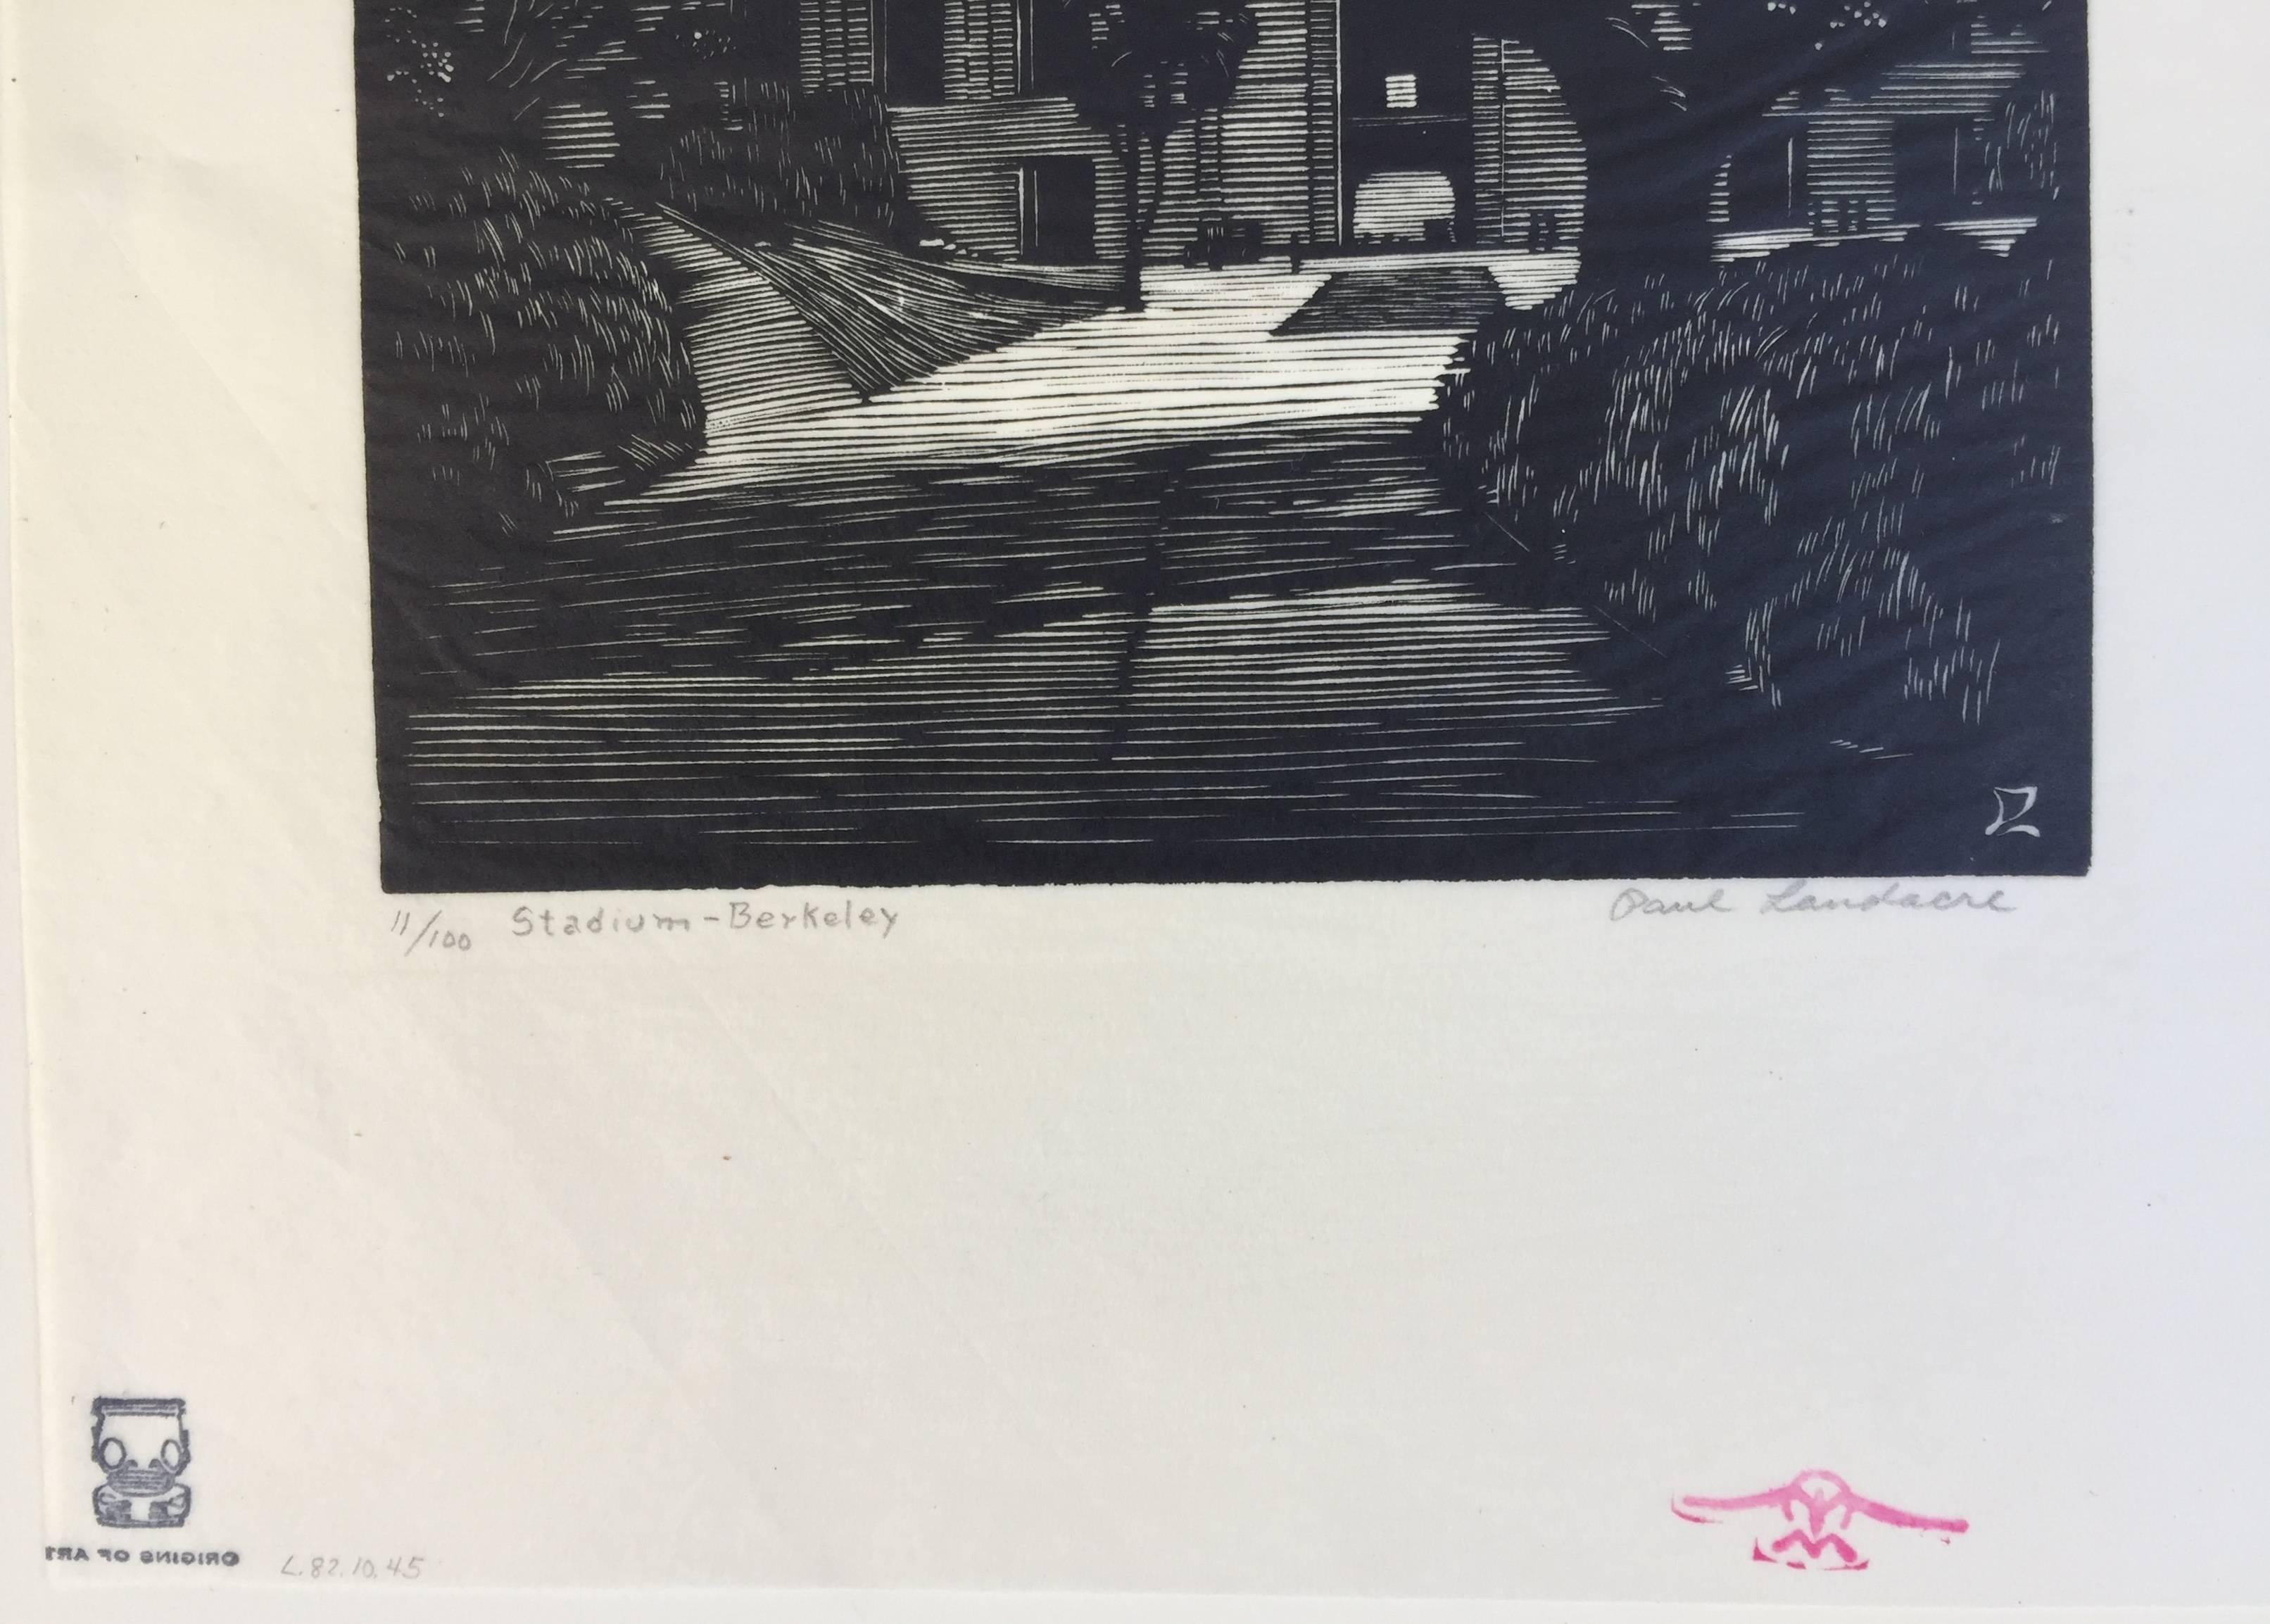 BERKELEY-STADION (Amerikanische Moderne), Print, von Paul Landacre